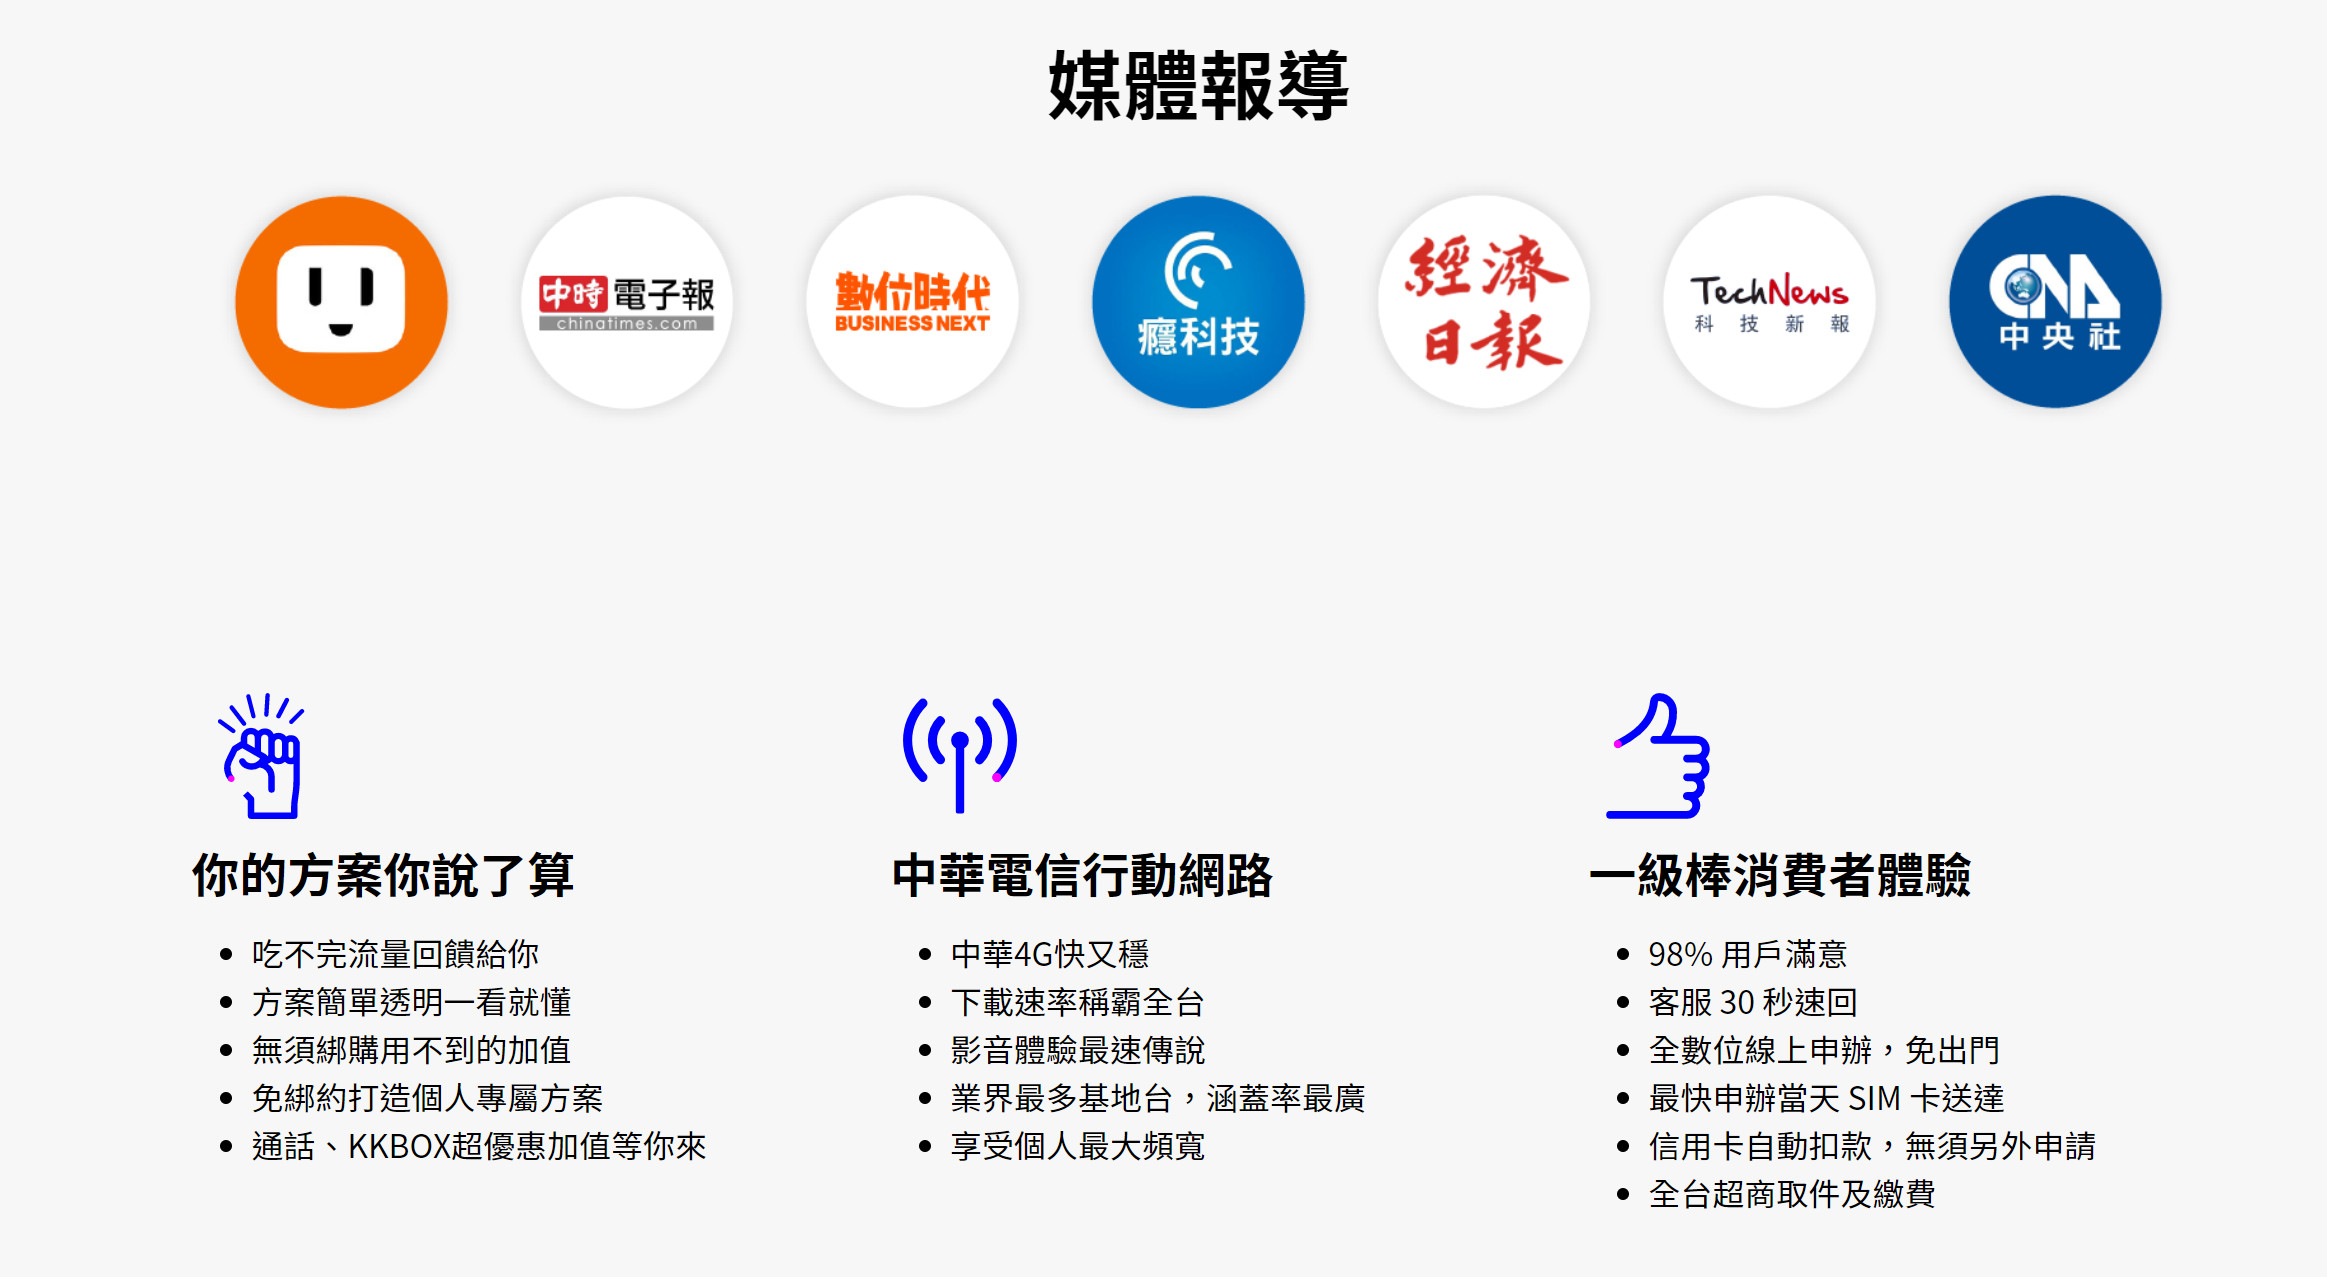 【無框行動】新春專案，中華電信大4G網路吃到飽466元，低流量只要166元!超適合搭配台灣之星雙11專案。 - 台灣之星雙11 - 敗家達人推薦